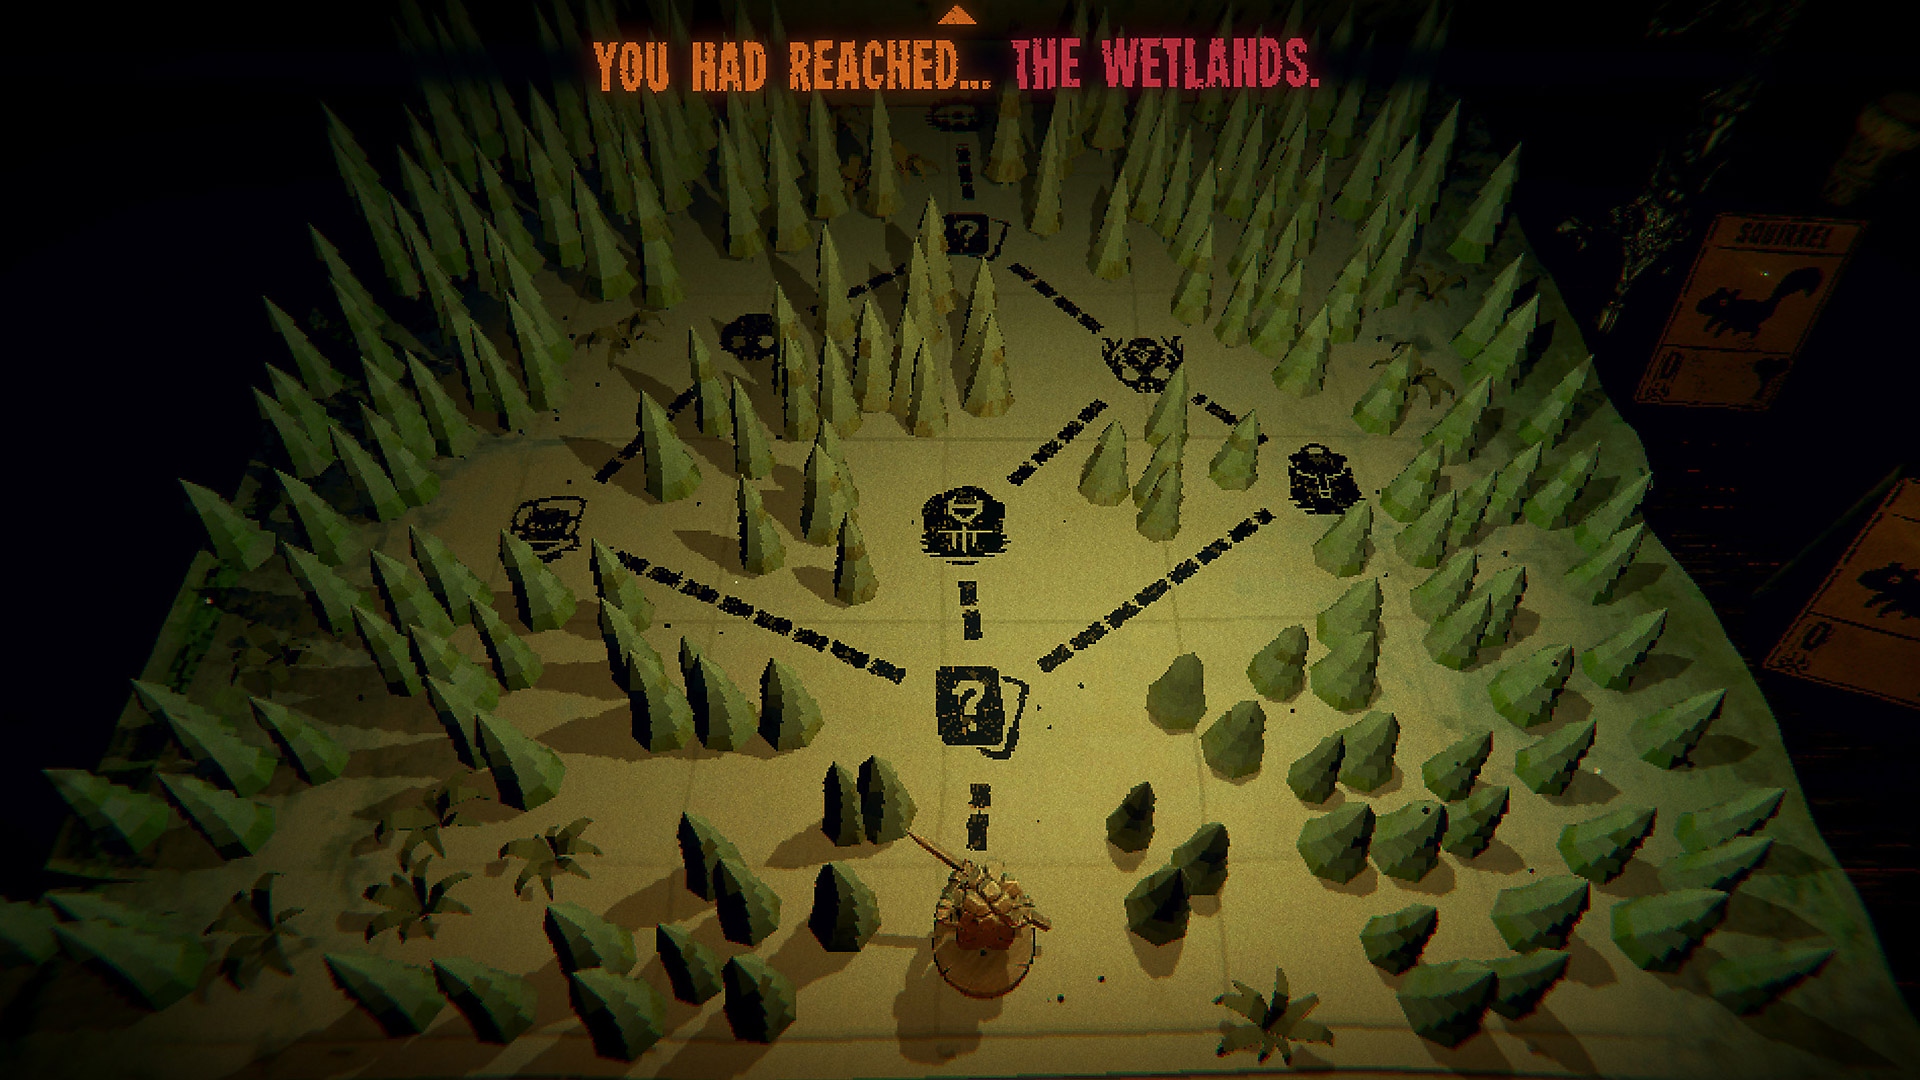 Istantanea della schermata di gioco di Inscryption che mostra una mappa di un'area boschiva con più percorsi che si districano tra gli alberi.